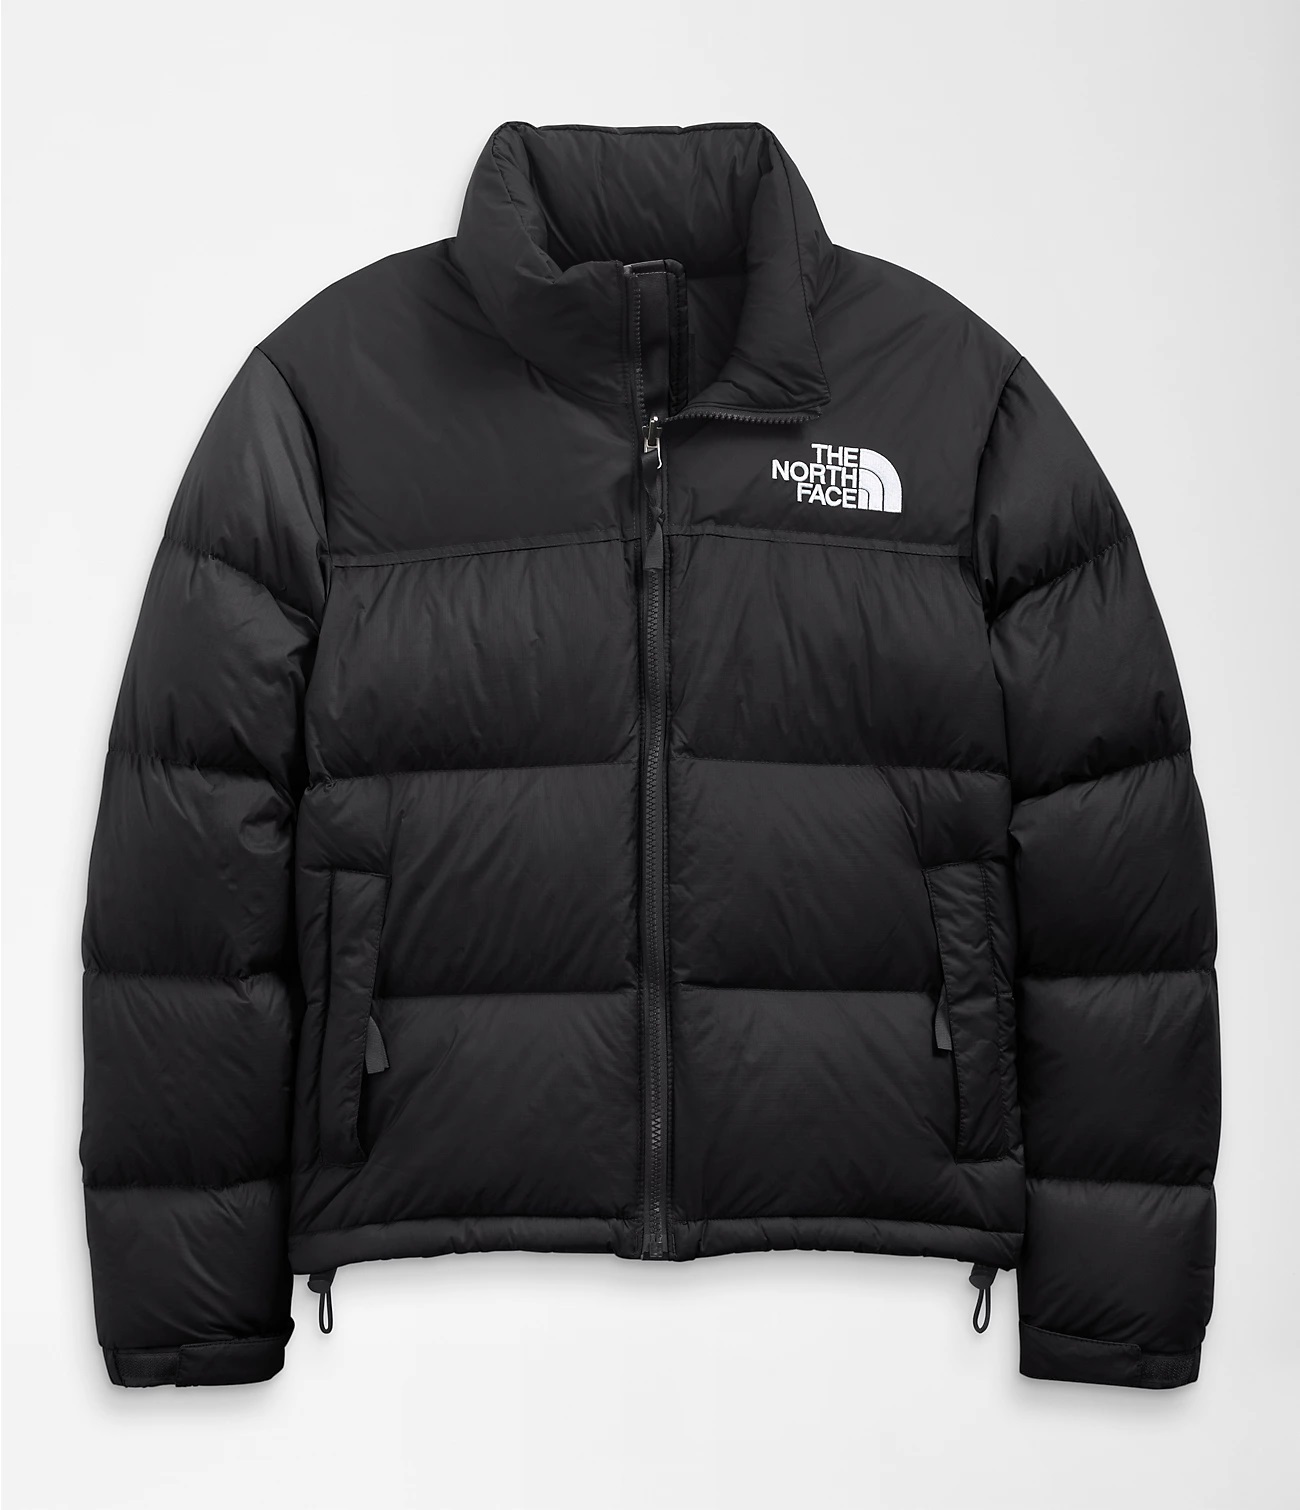 The North Face 1996 Retro Nuptse Jacket - Right Jackets